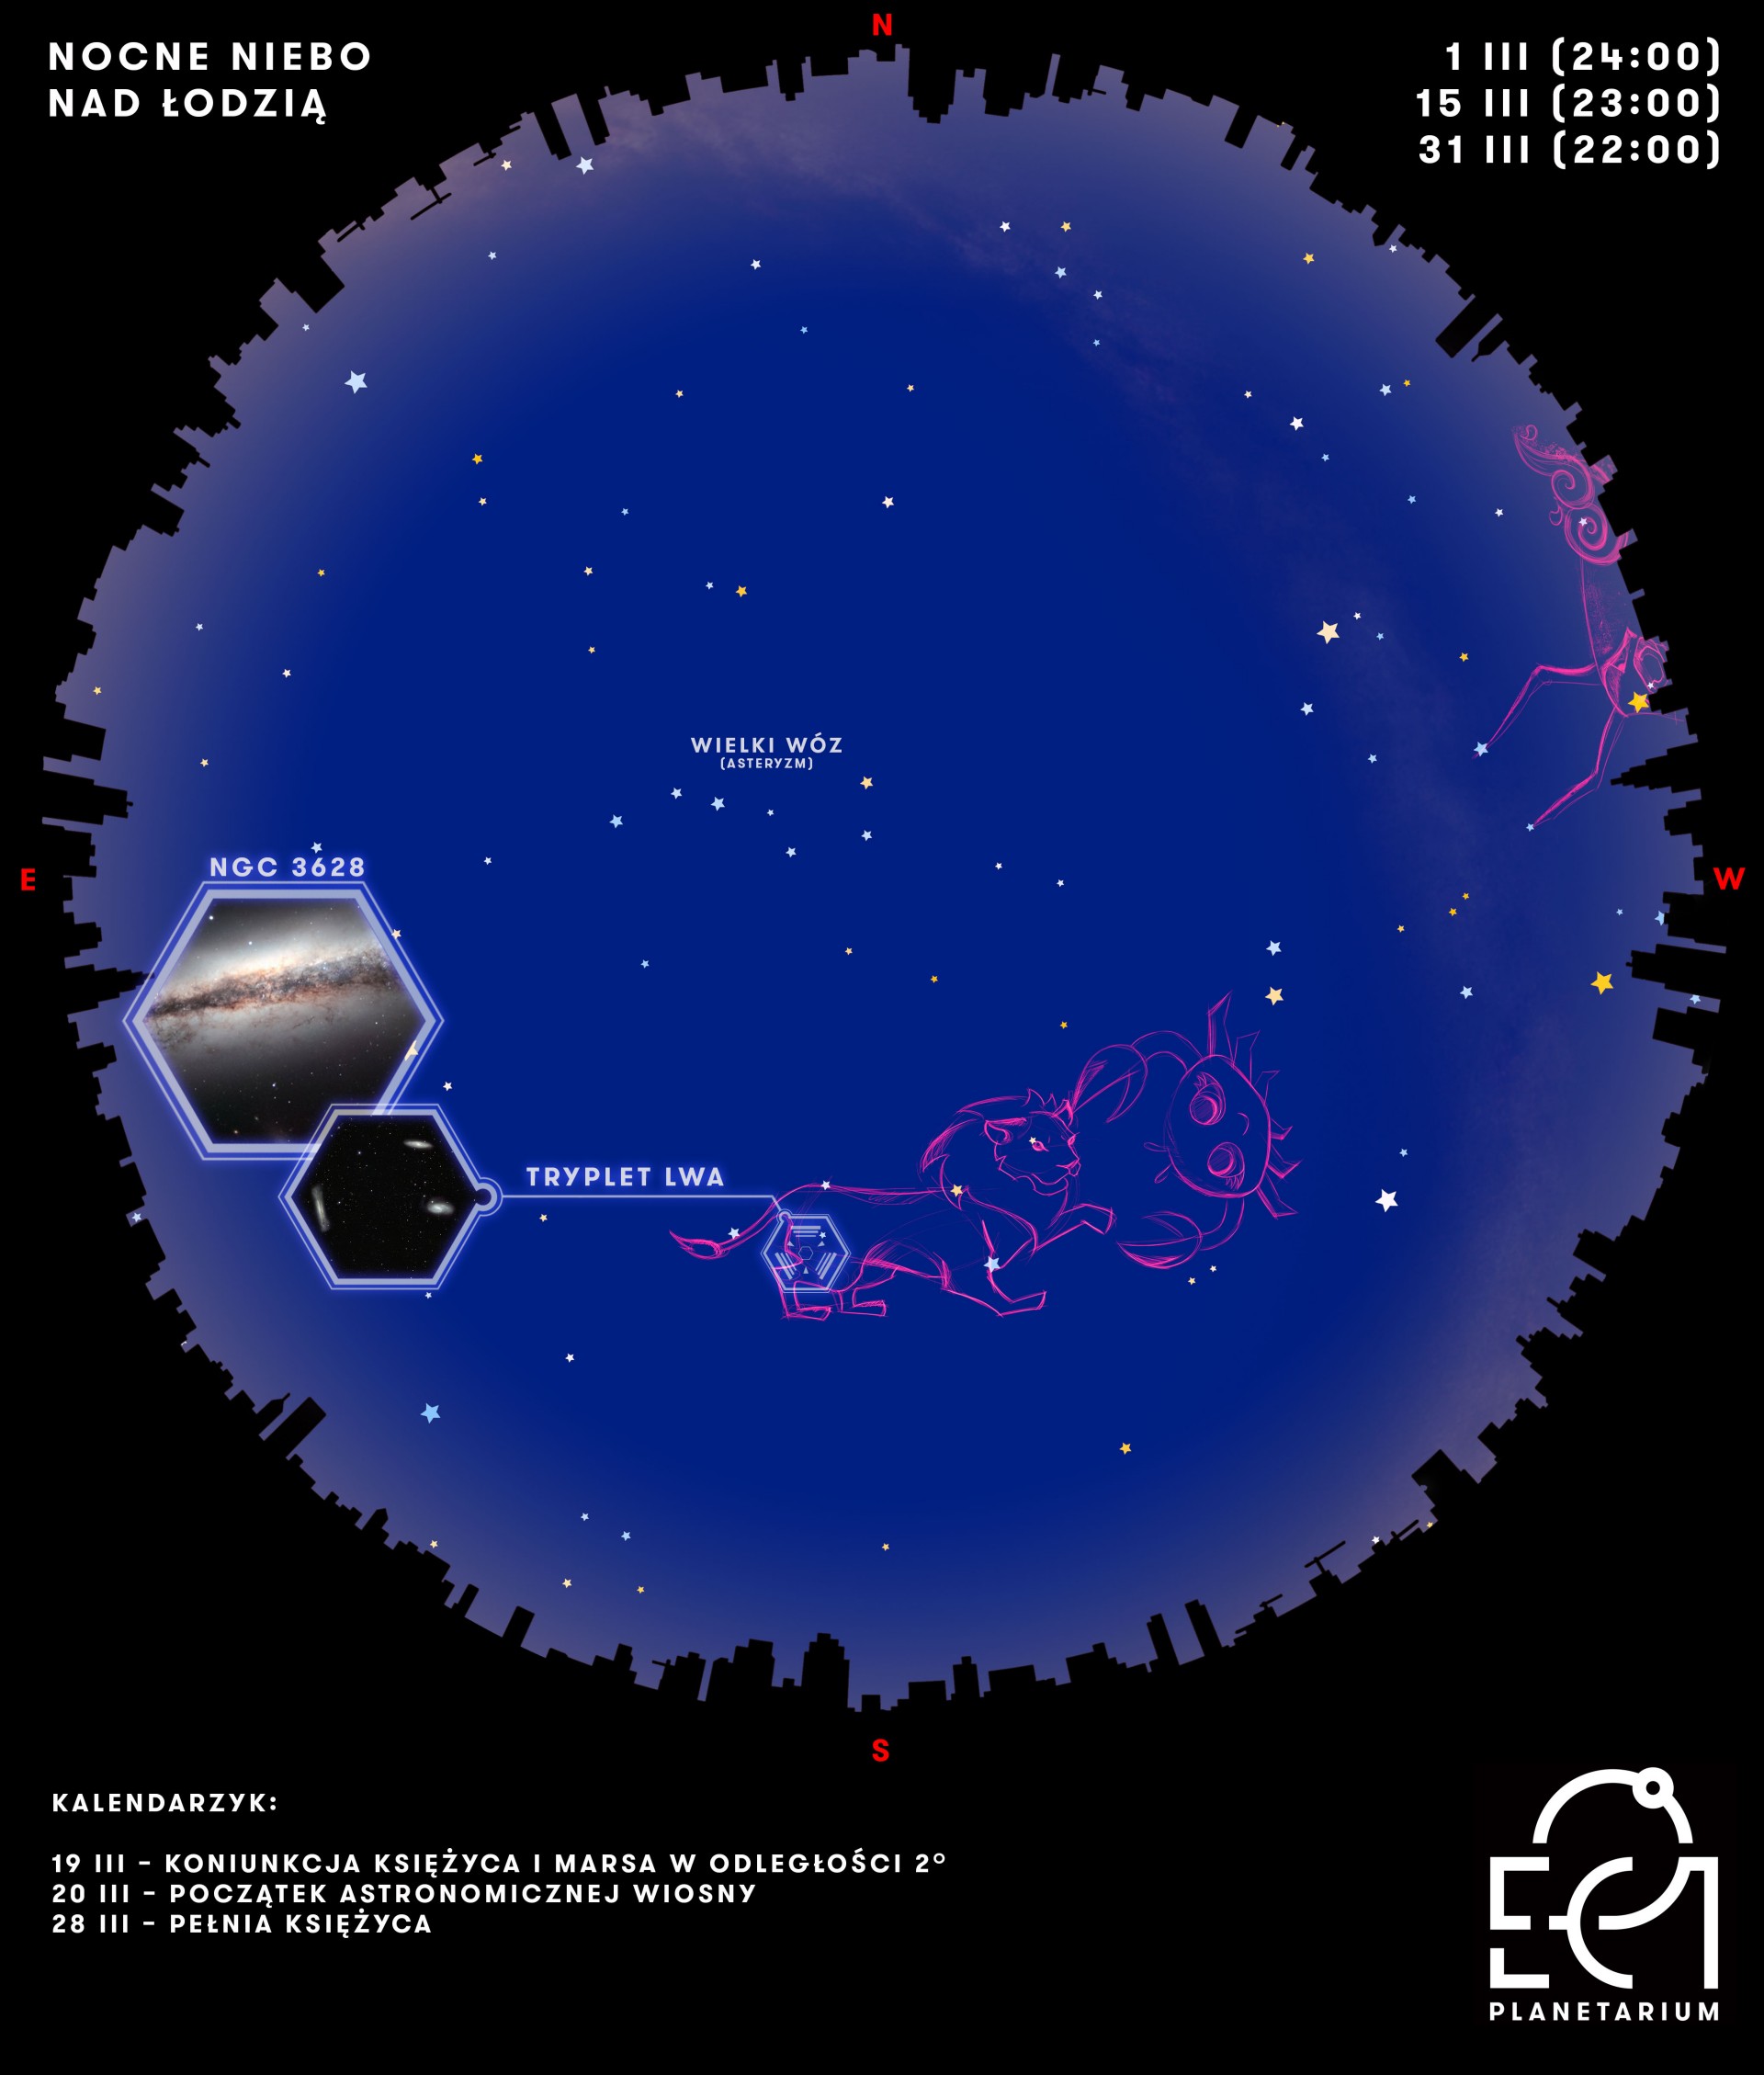 Mapa nocnego nieba nad Łodzią - infografika wskazuje położenie obiektów opisanych w artykule